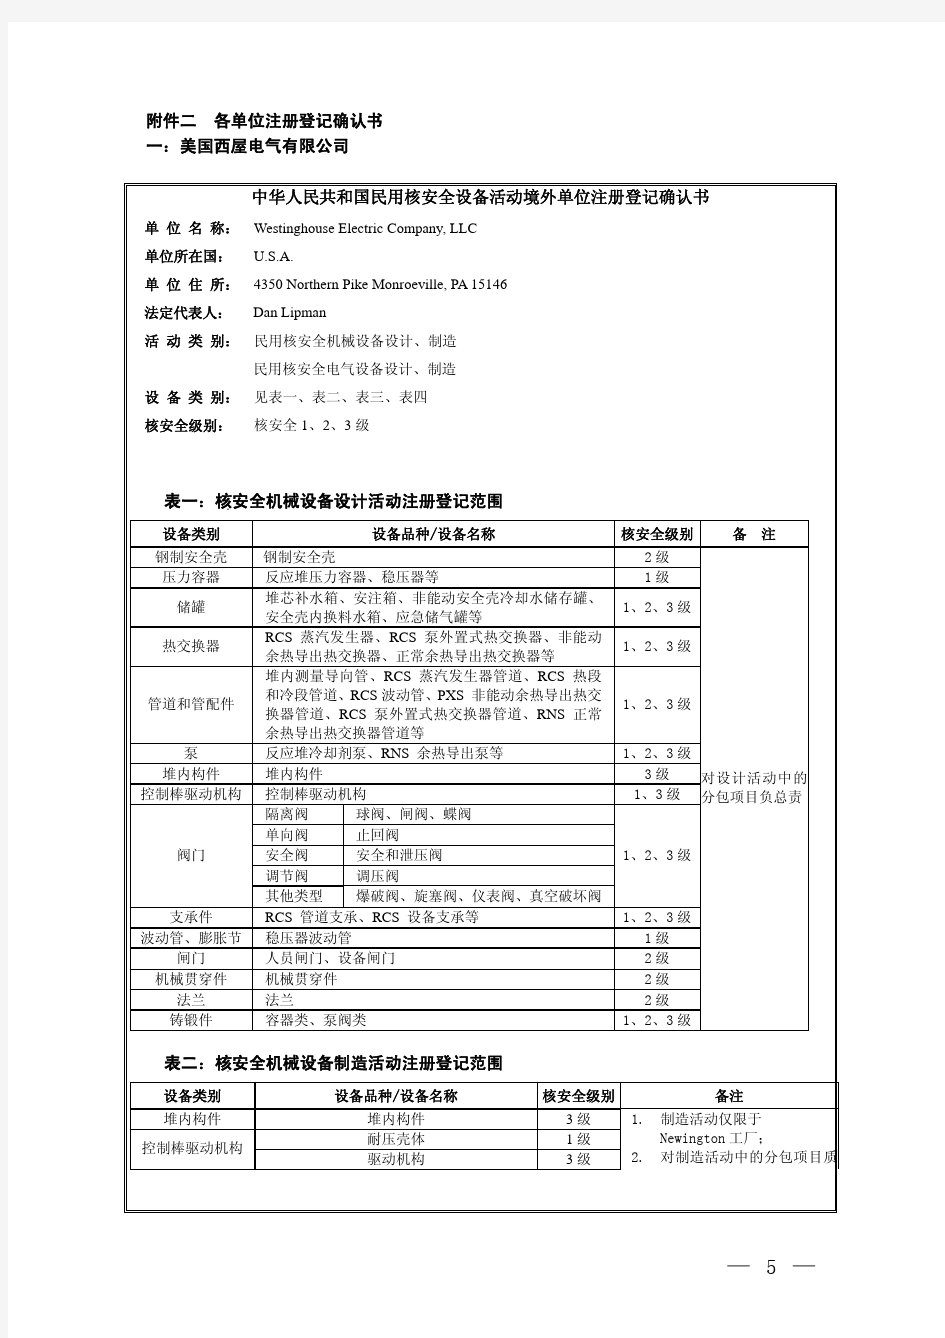 中华人民共和国民用核安全设备活动境外单位注册登记名单